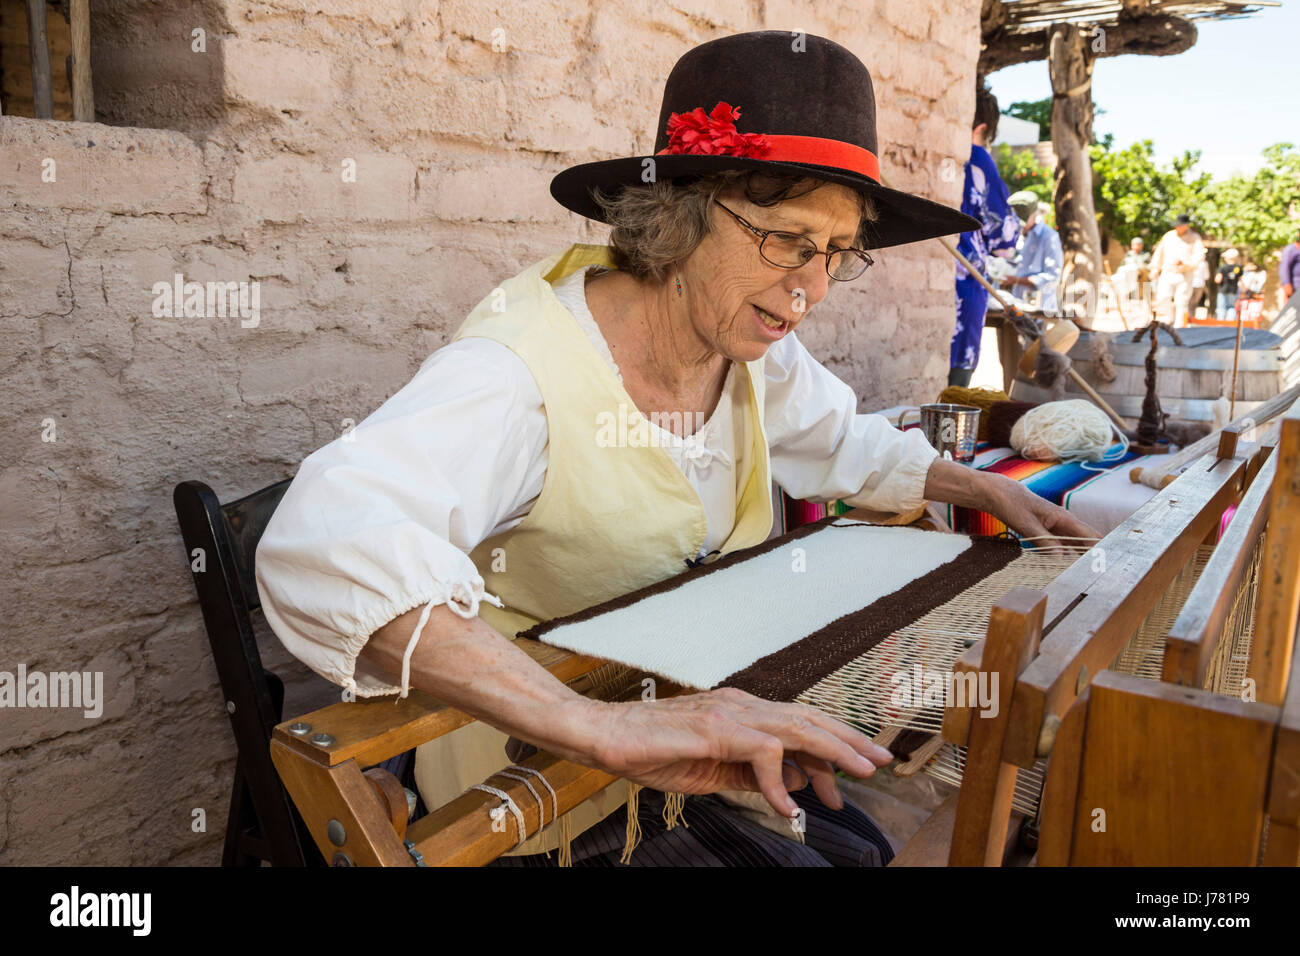 Tucson, Arizona - un costume reenactor dimostra durante la tessitura Storia viva giorno presso il Presidio di Tucson. L'originale fortezza spagnola è stata costruita Foto Stock